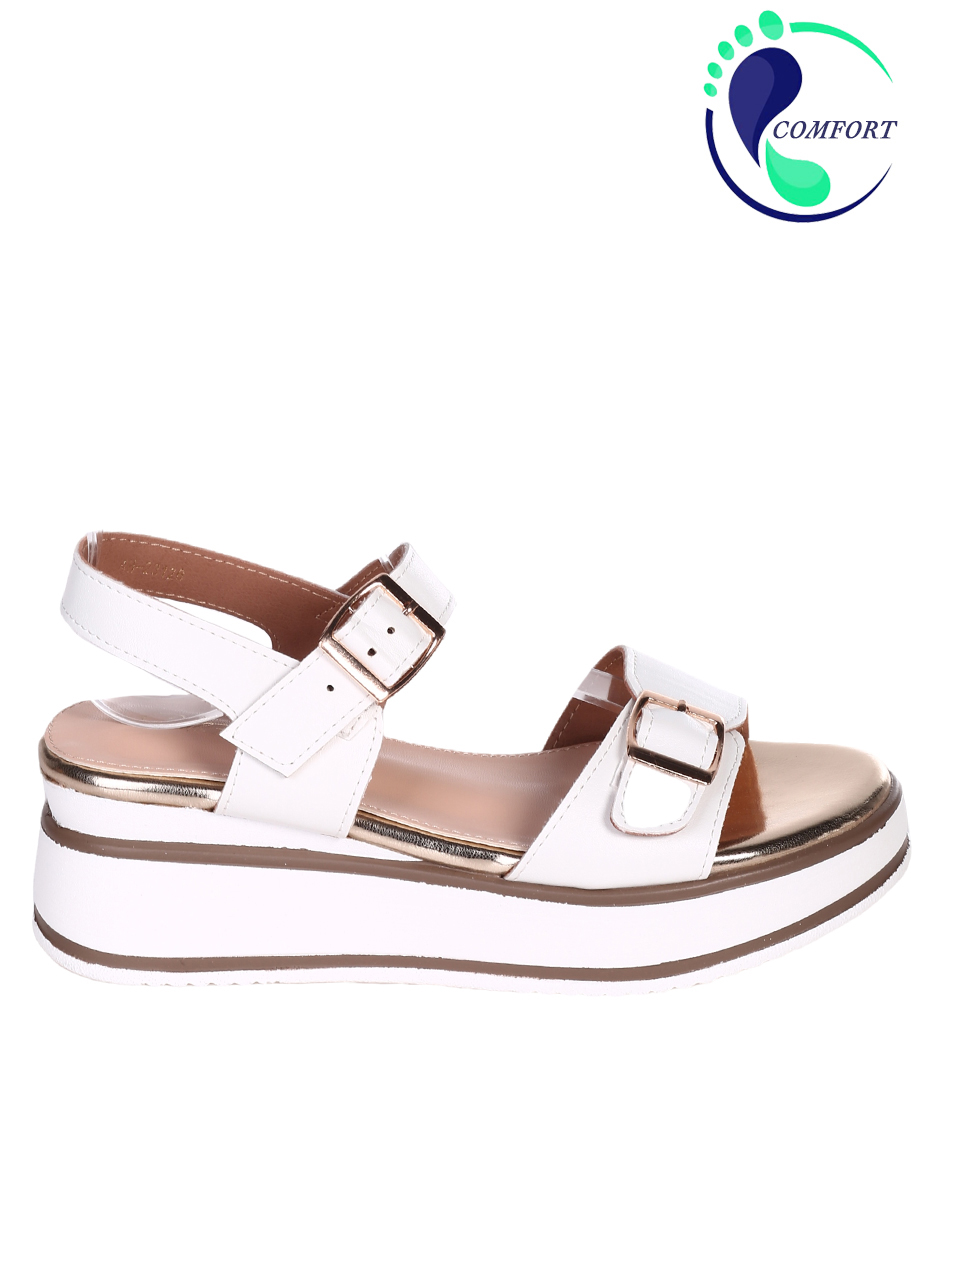 Еждневни дамски сандали на платформа в бяло 4H-23126 white